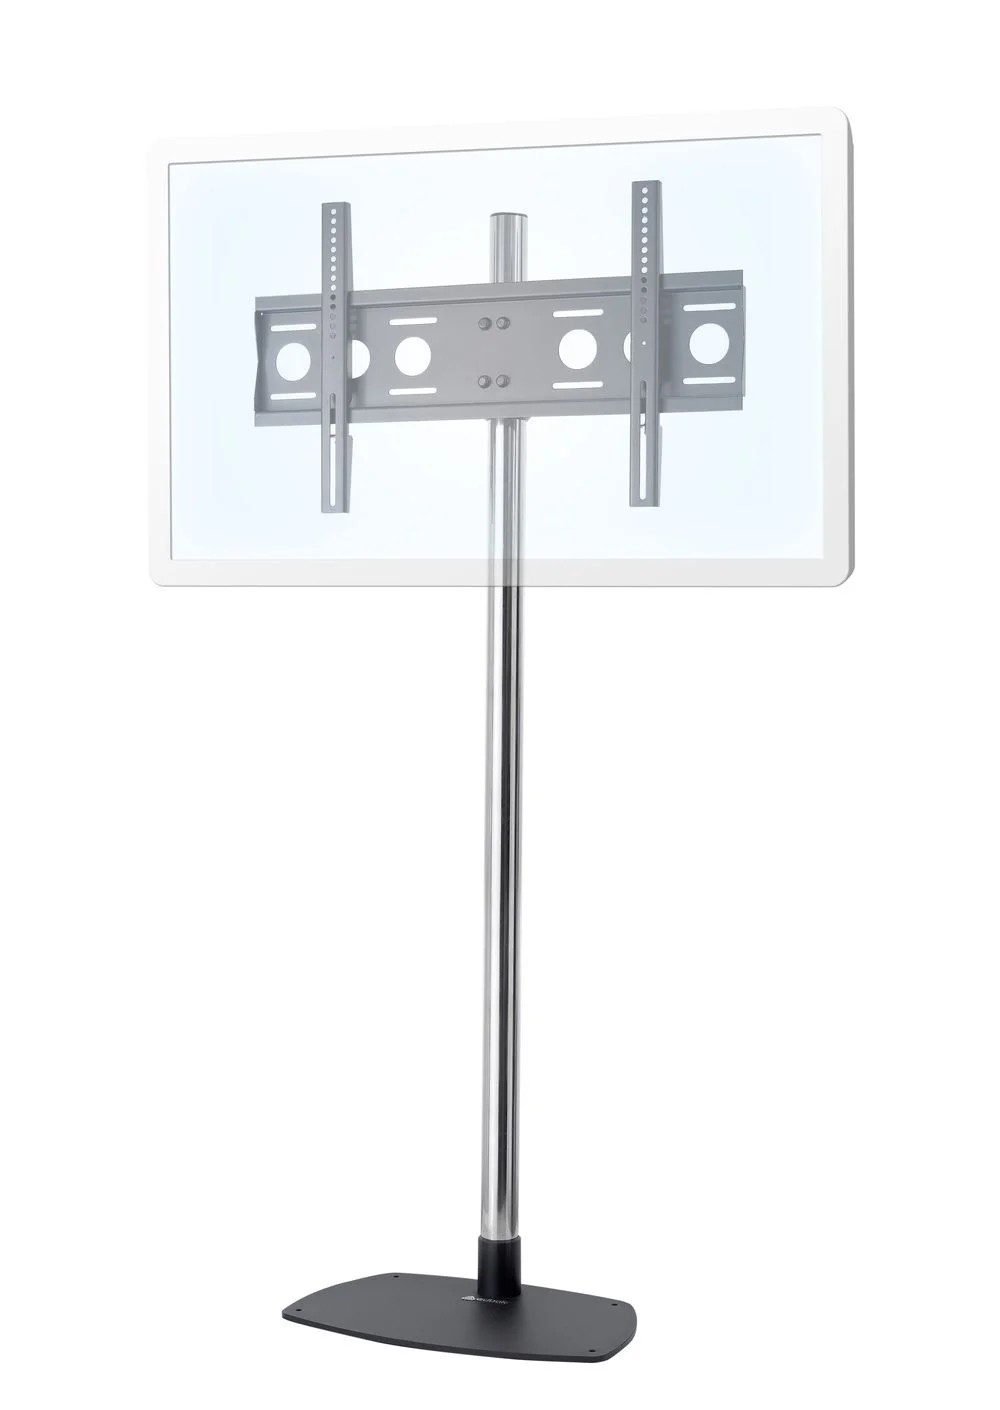 edbak EB-STD01C-B - höhenverstellbarer Standfuß für Displays 40 - 75 Zoll - VESA 600x400 mm - bis 80 kg - Landscape - Silber / Schwarz